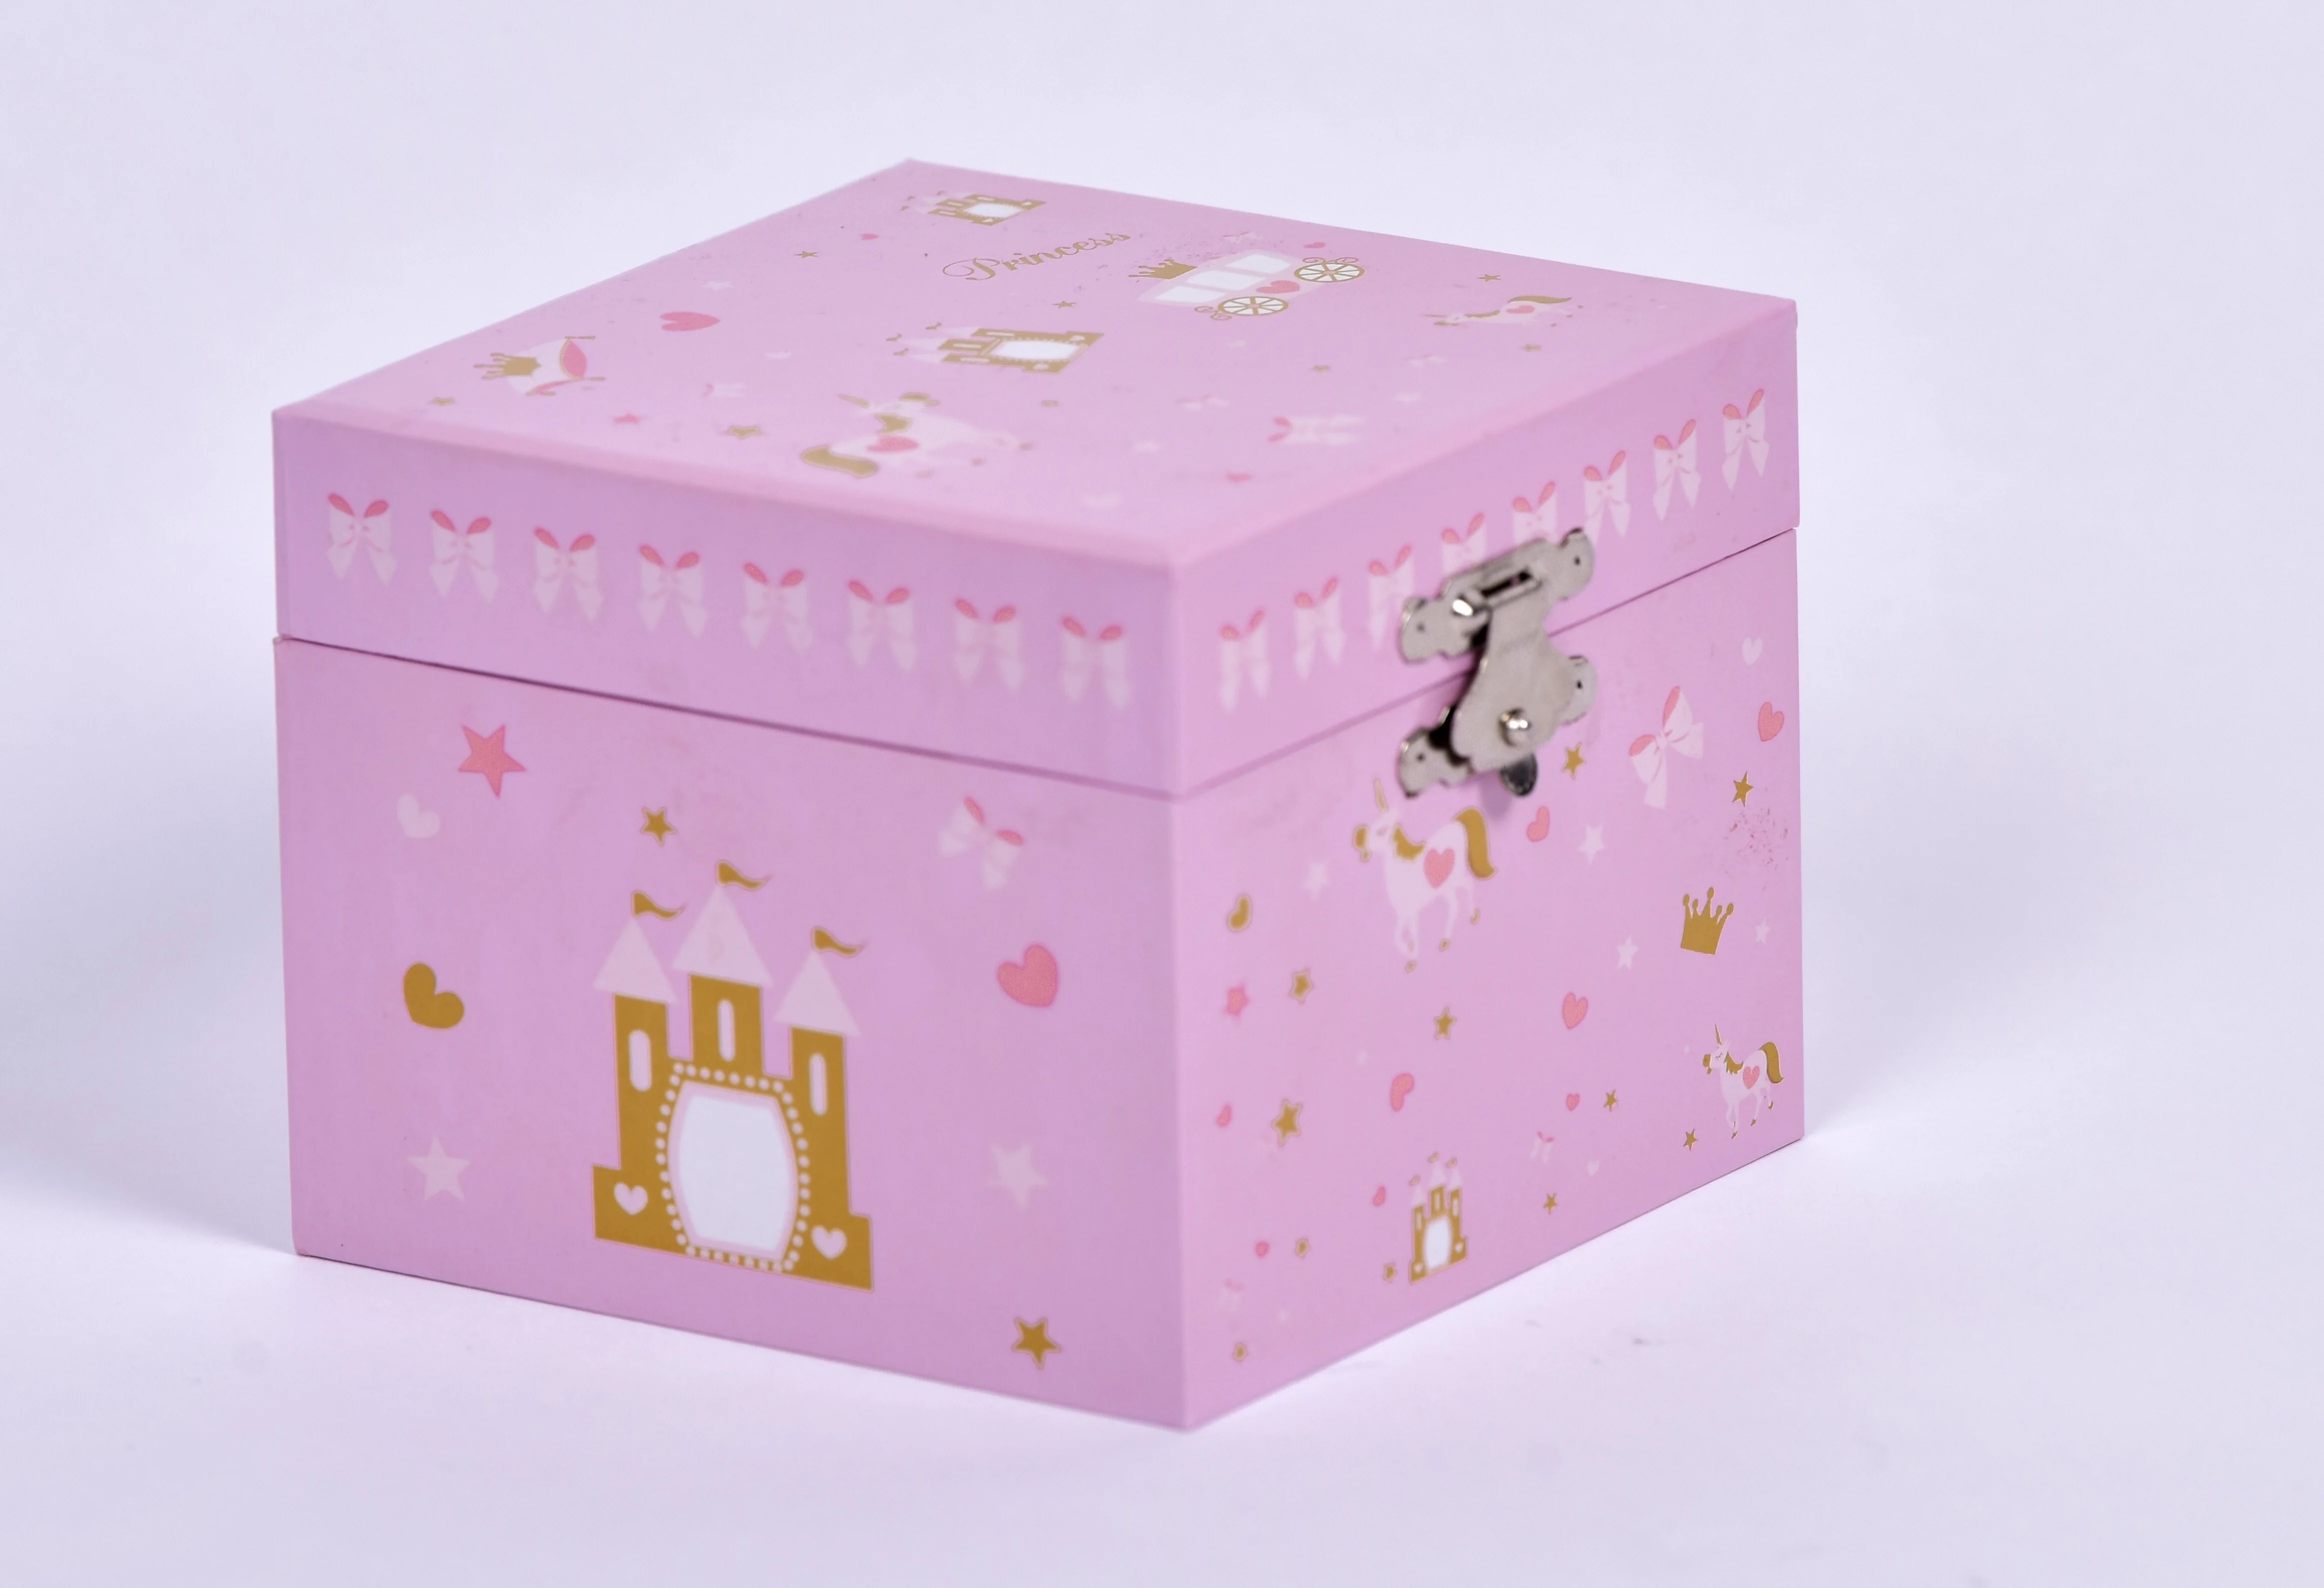 Unicorn Music Box Ballerina Jewelry Musical Box Kid Toys Hand Cranked Music Box  for Girls & Boys Gift